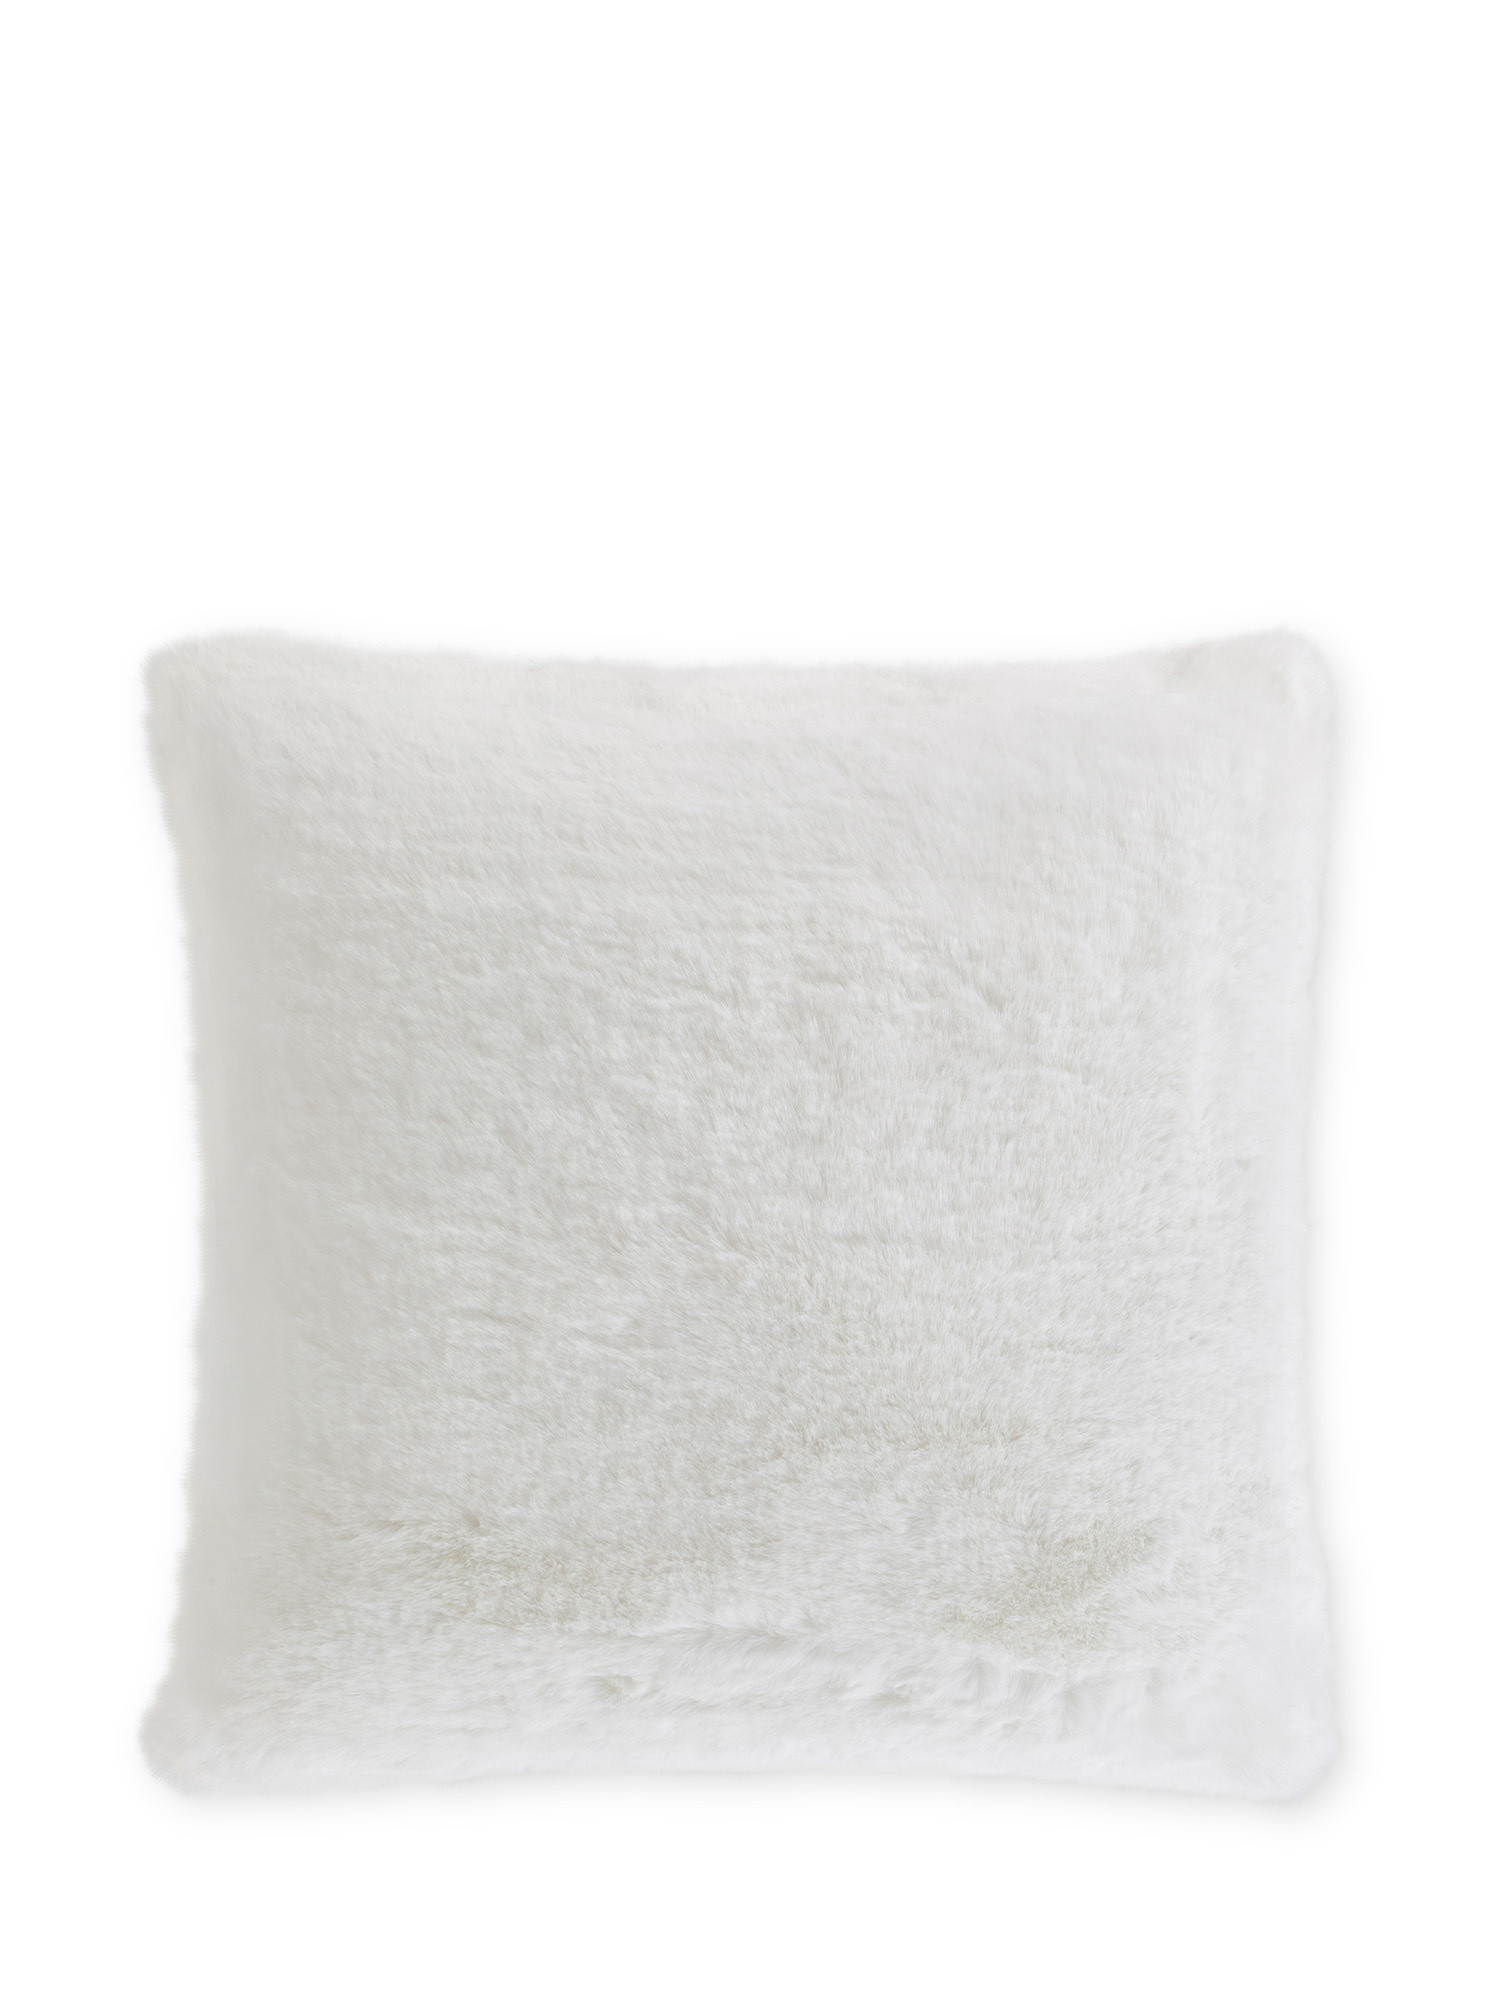 Cuscino in ecopelliccia tinta unita 45x45 cm, Bianco, large image number 0